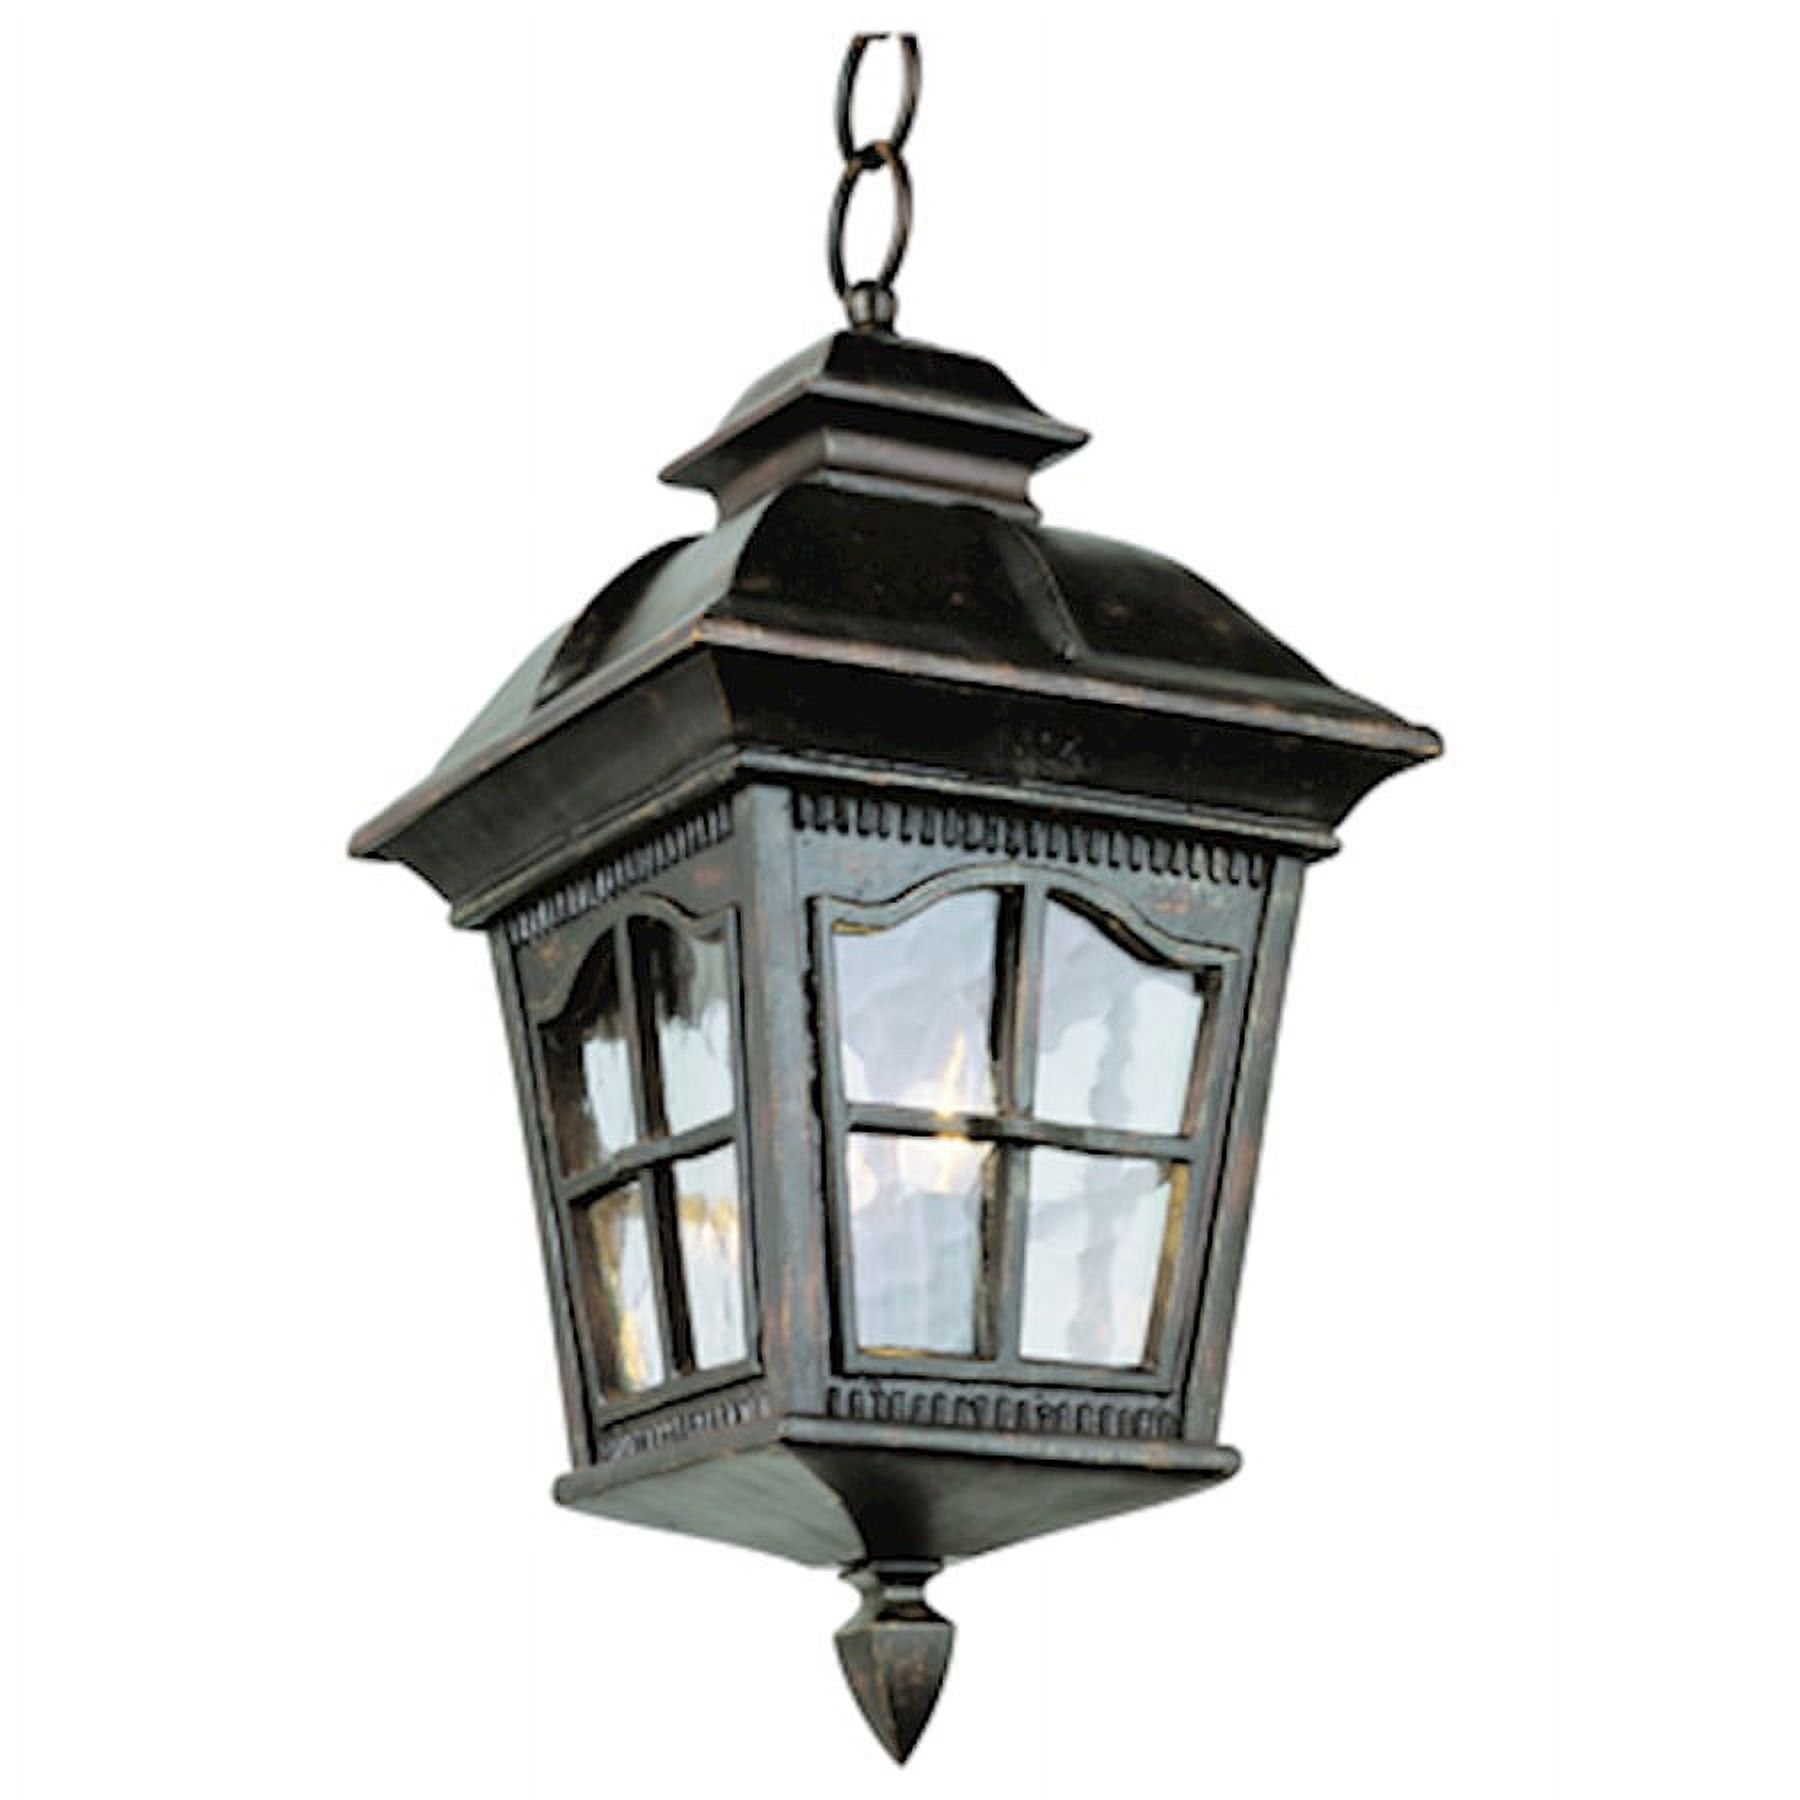 Trans Globe Chesapeake 5426 Outdoor Hanging Lantern - 24H in. - image 1 of 1